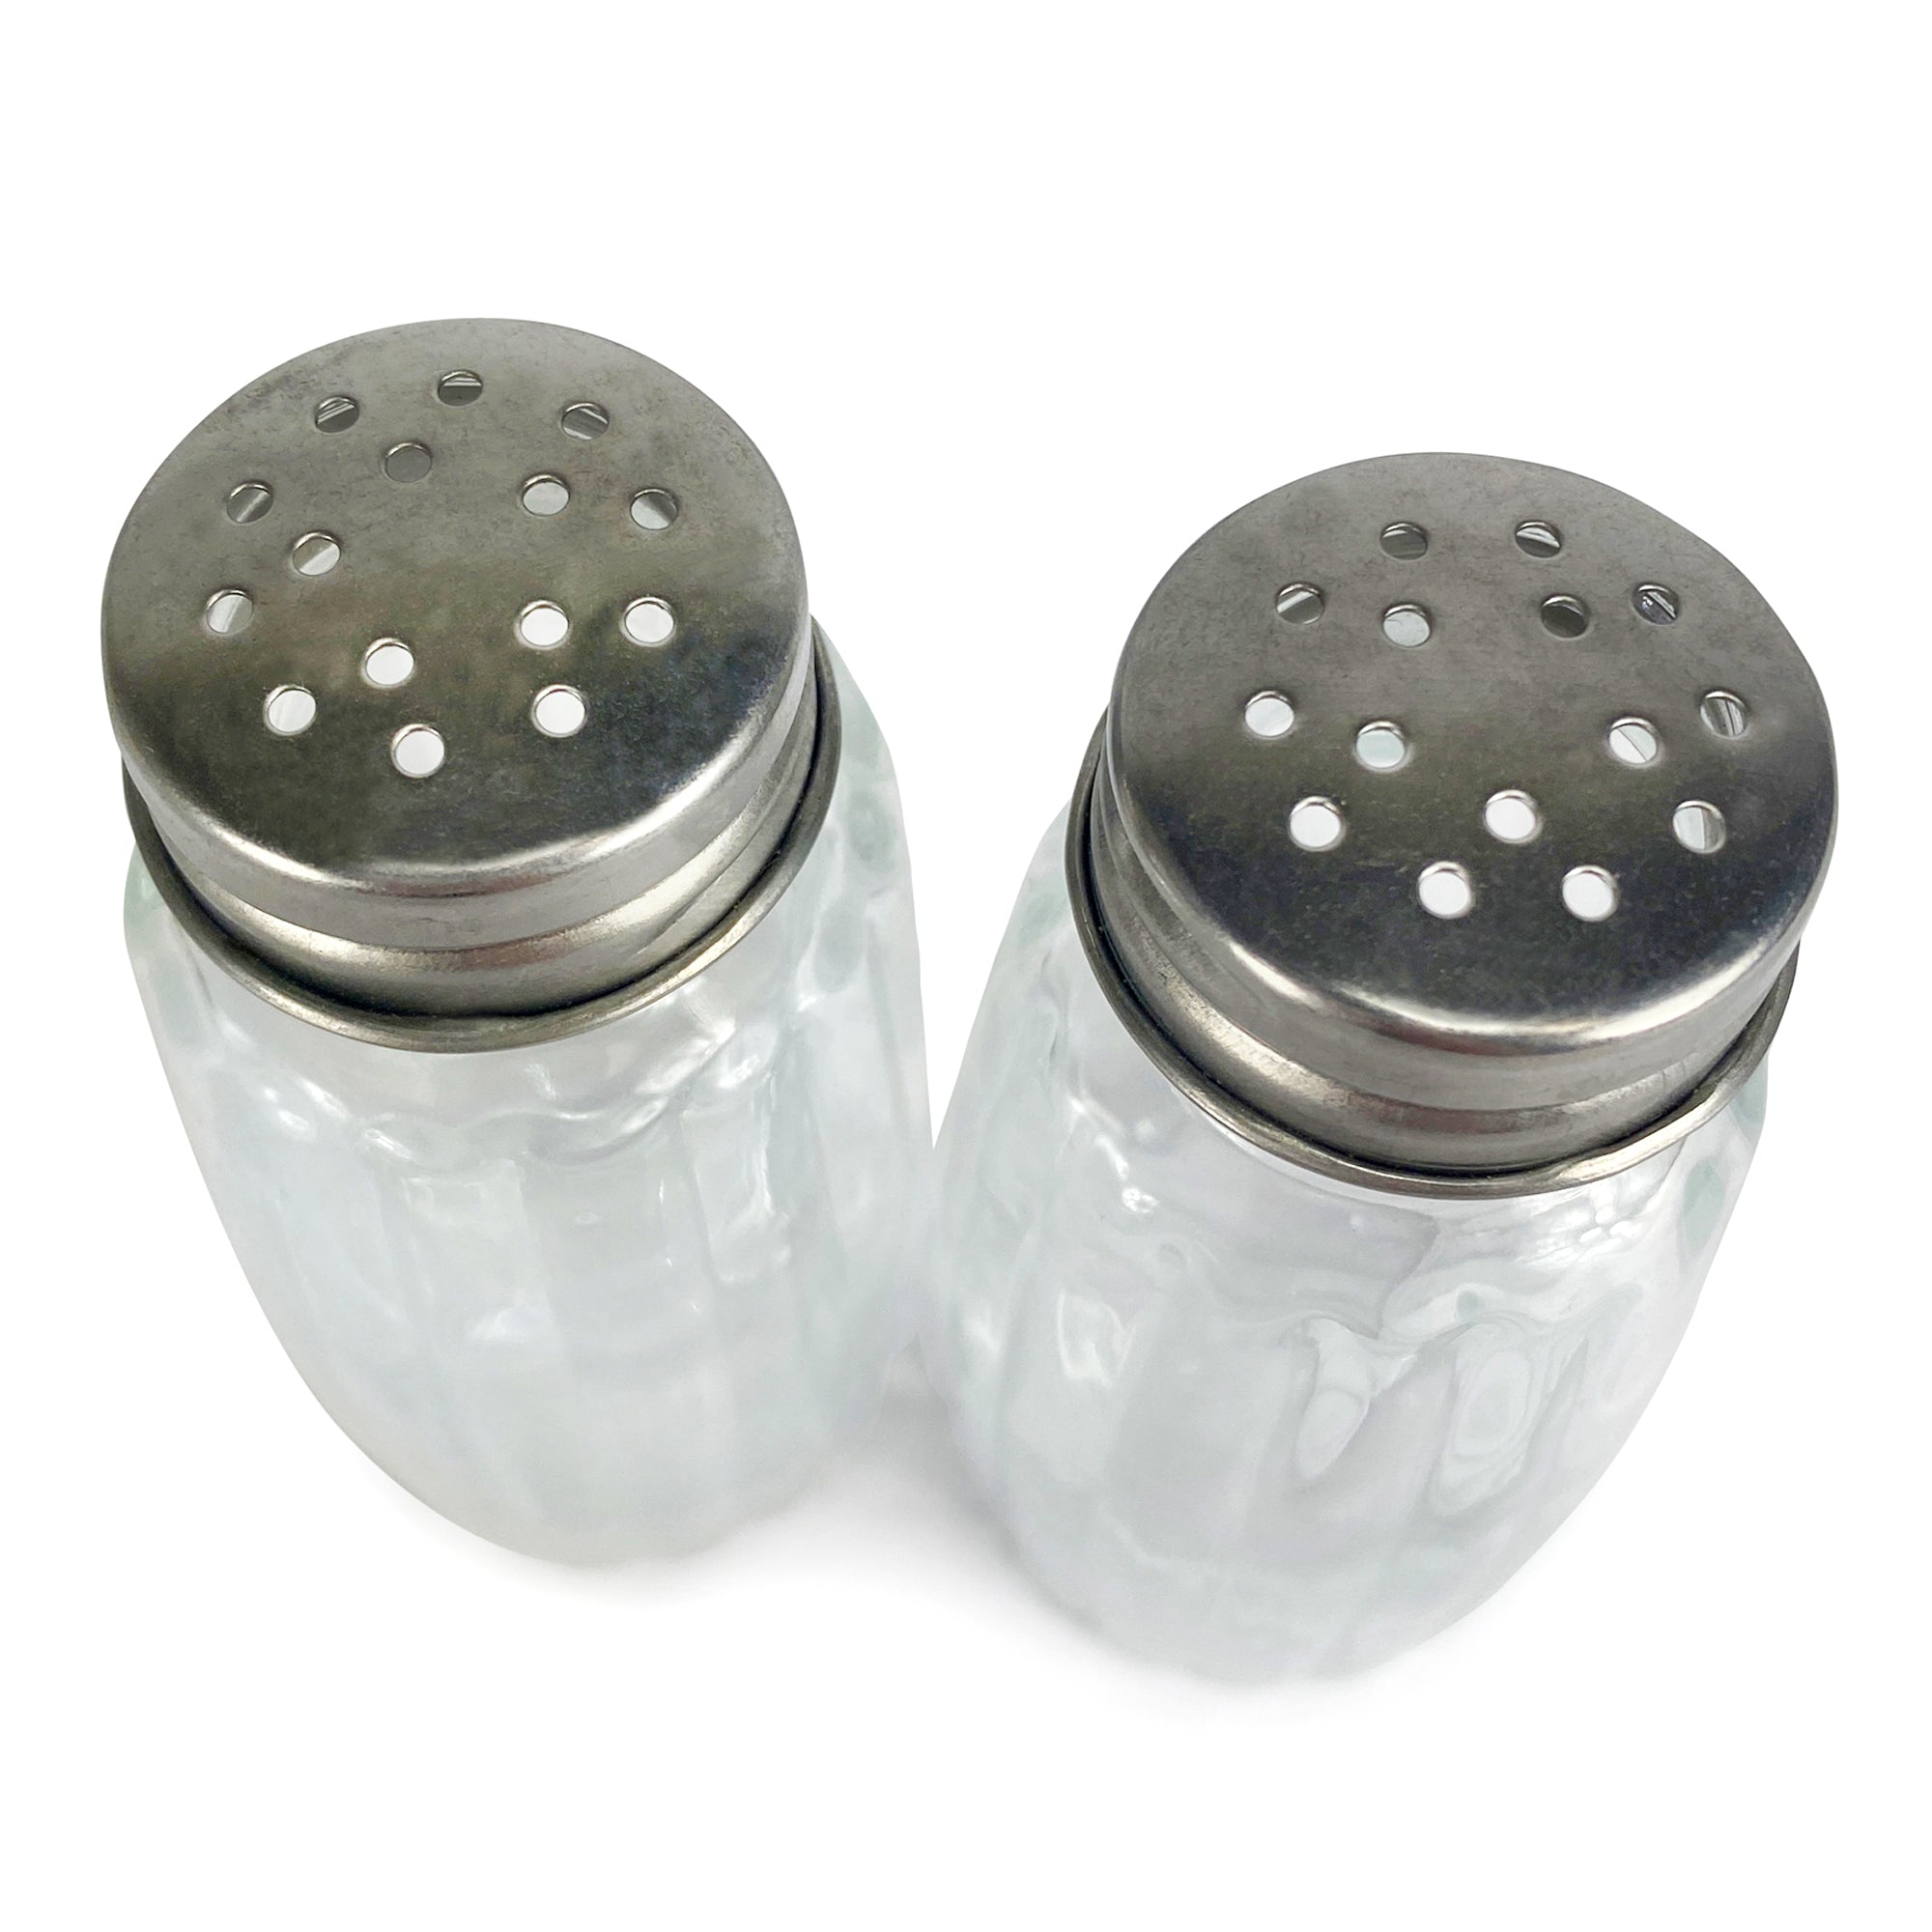 PSI Salt and Pepper Shaker Kit Set